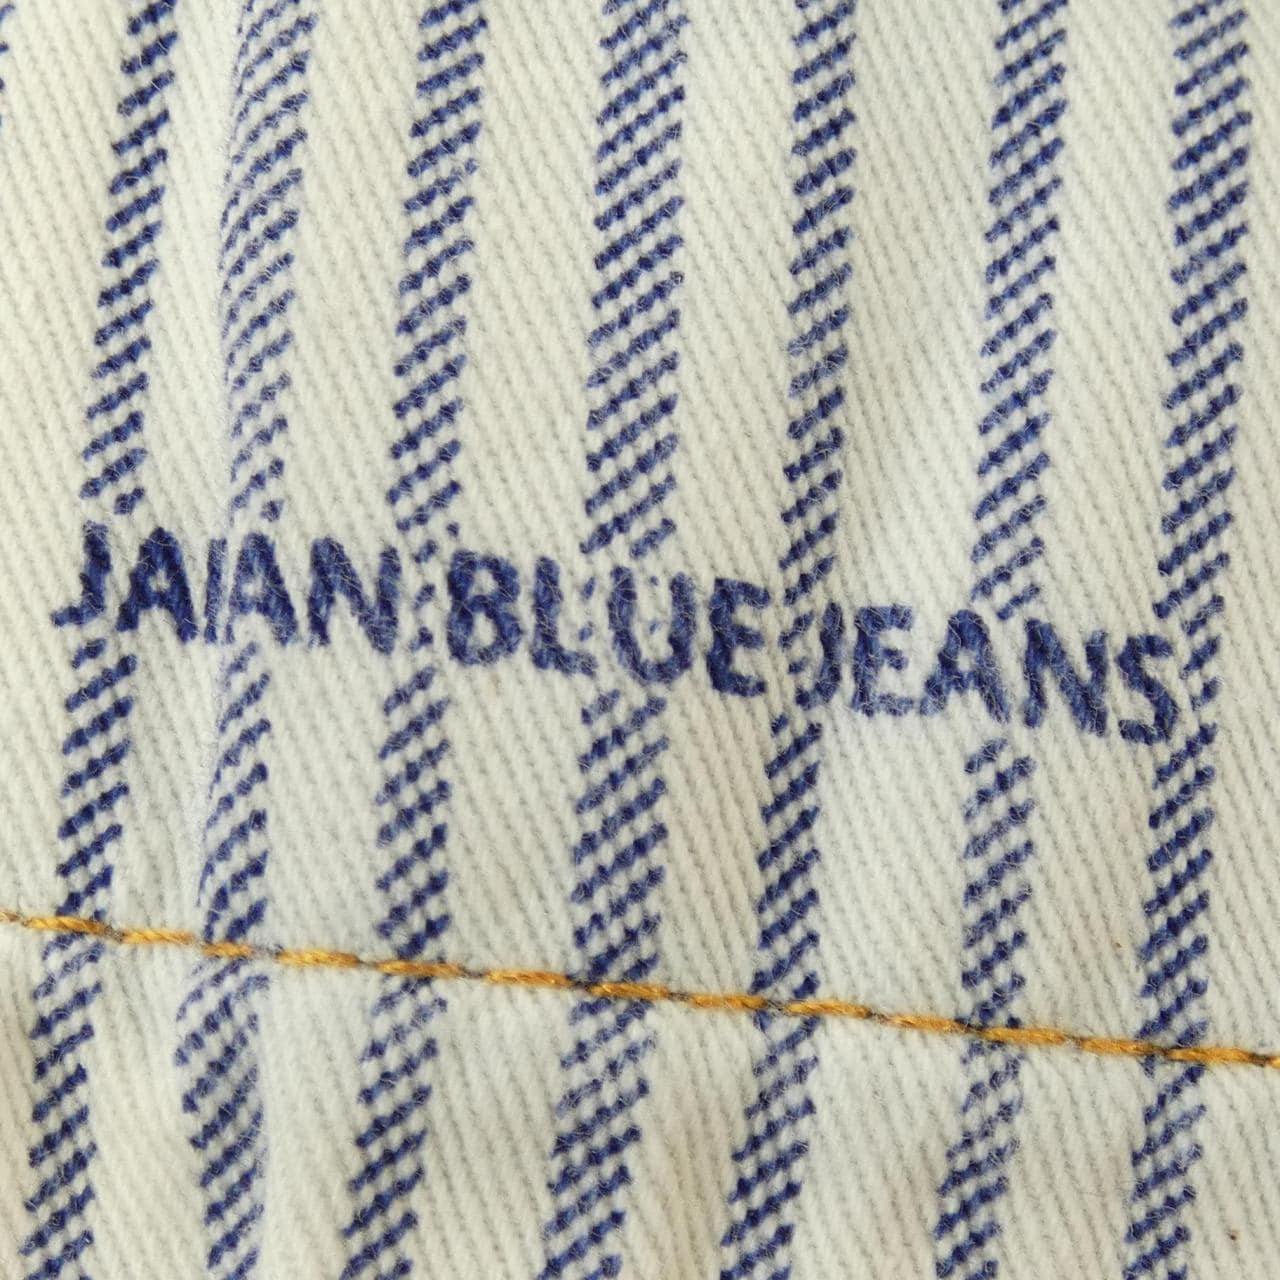 ジャパンブルージーンズ JAPAN BLUE JEANS ジーンズ